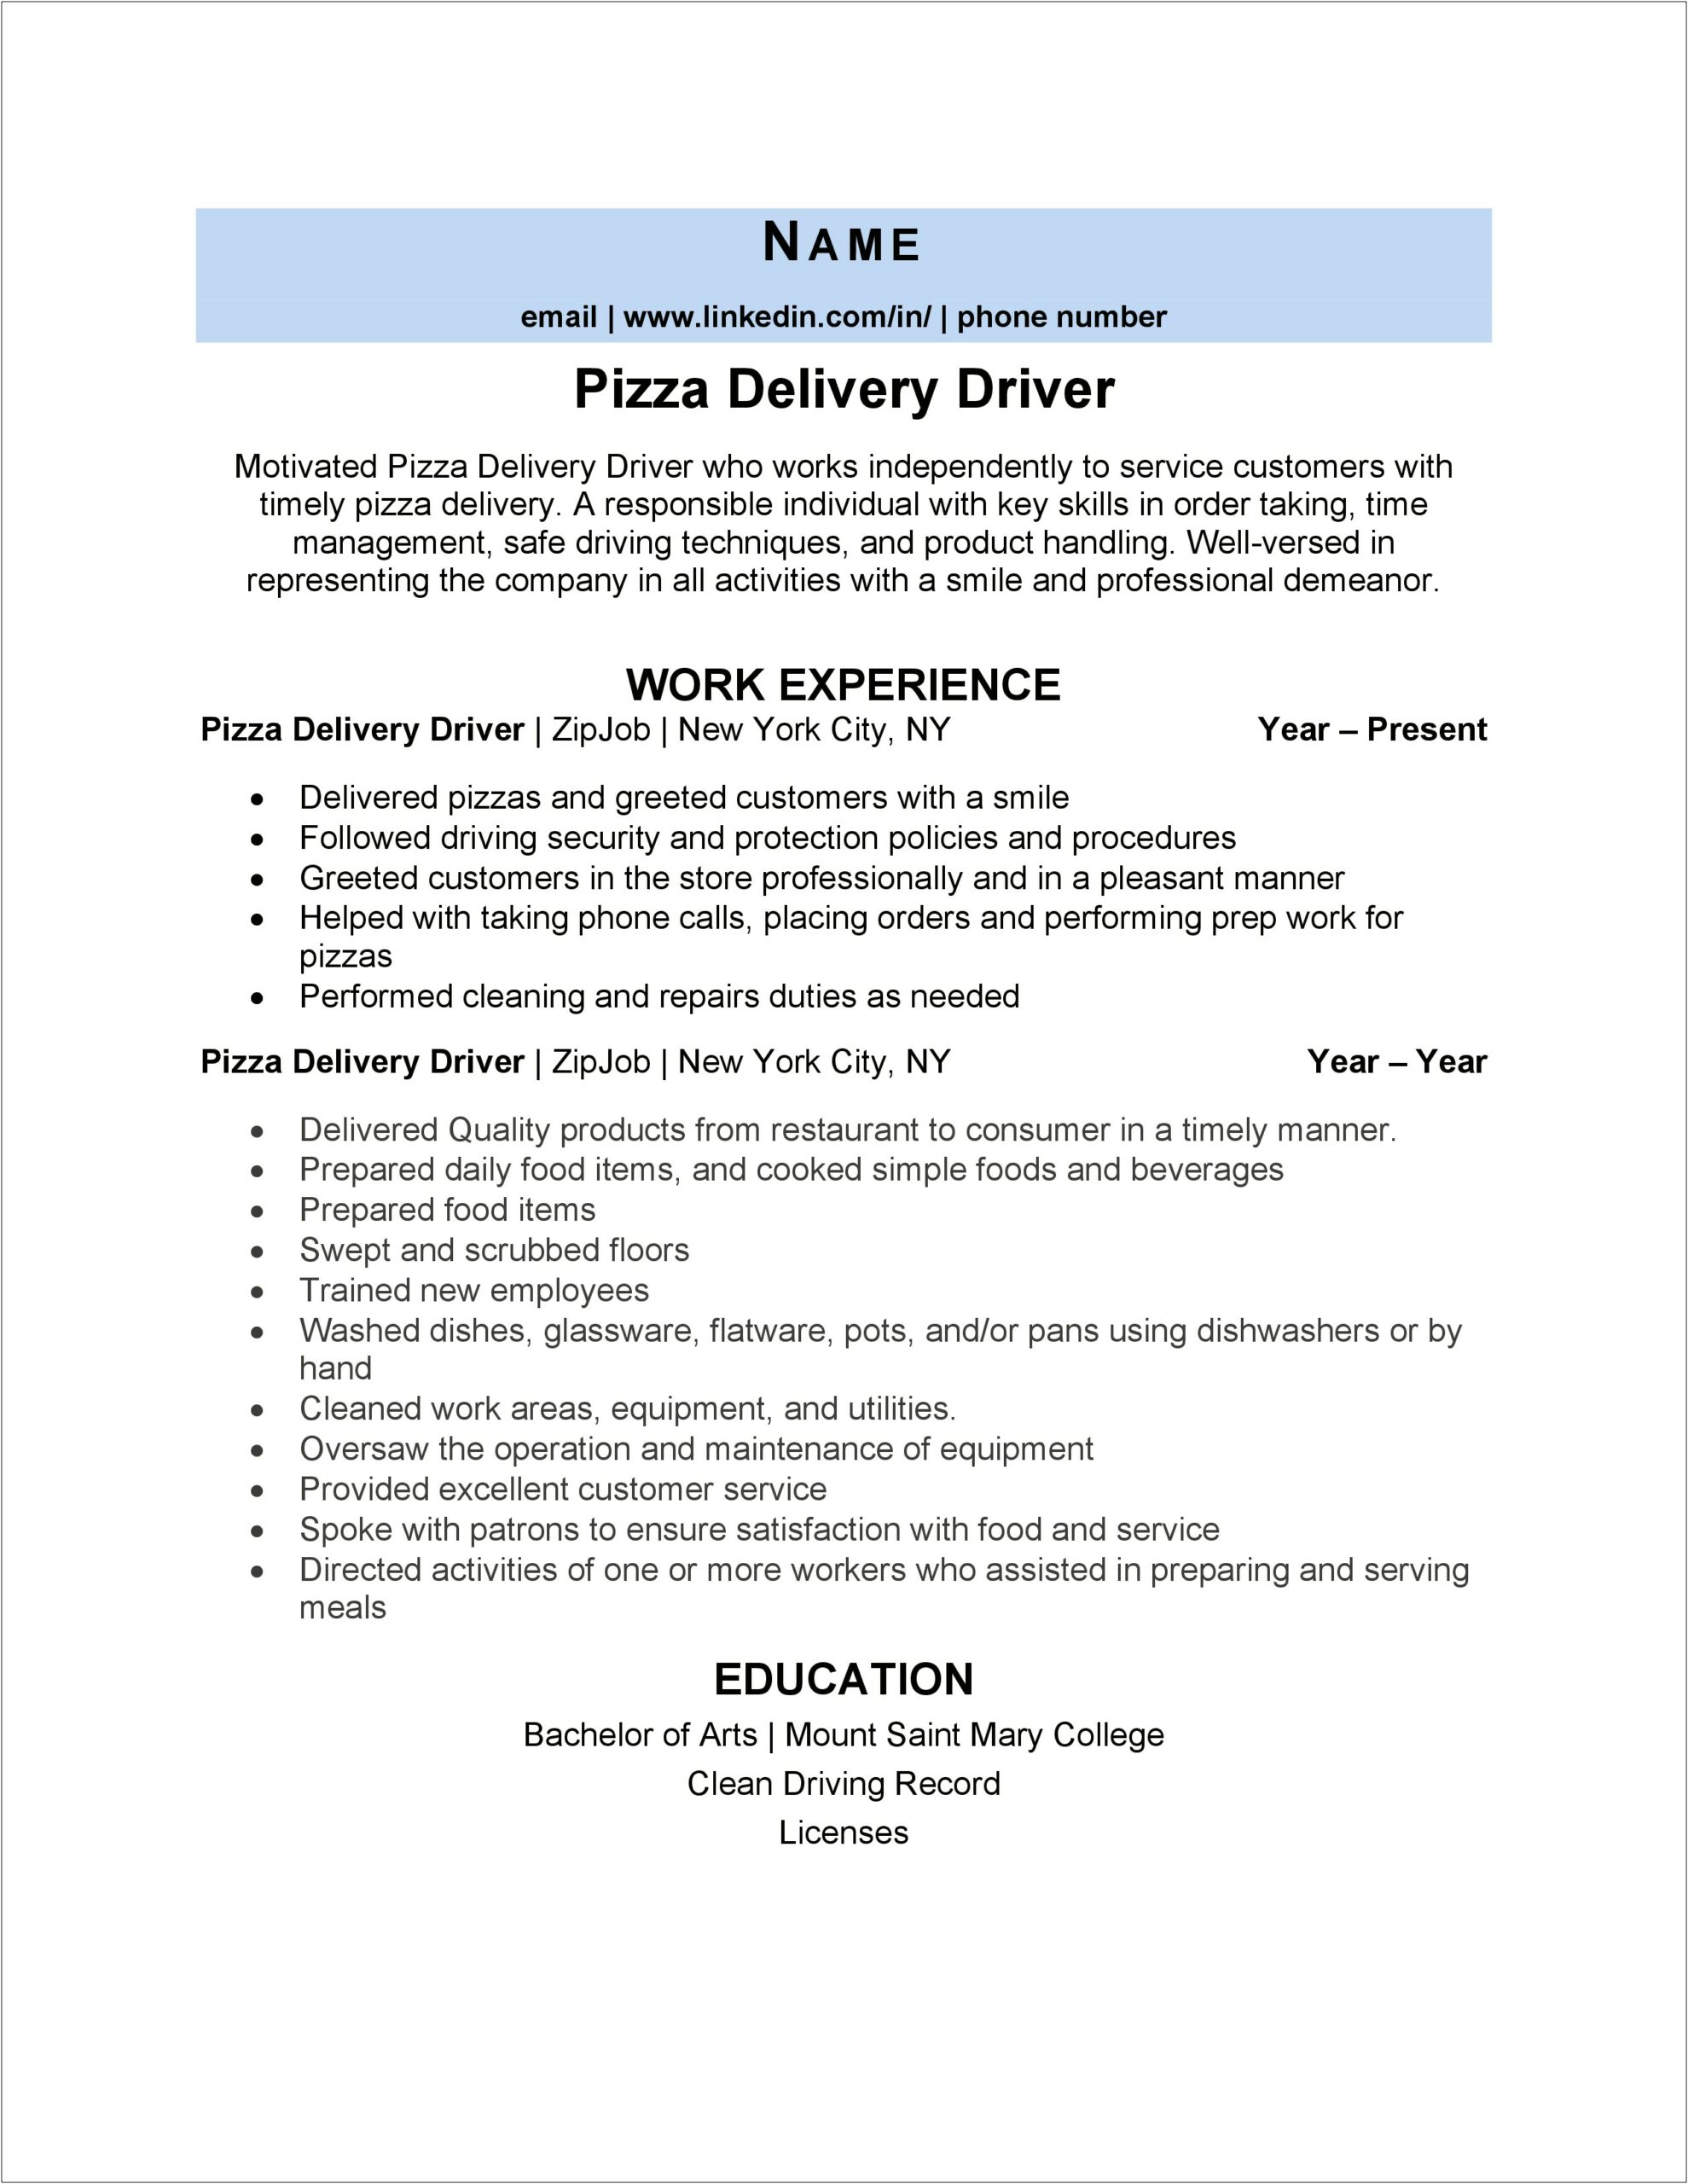 Job Description For Domino's Pizza On Resume